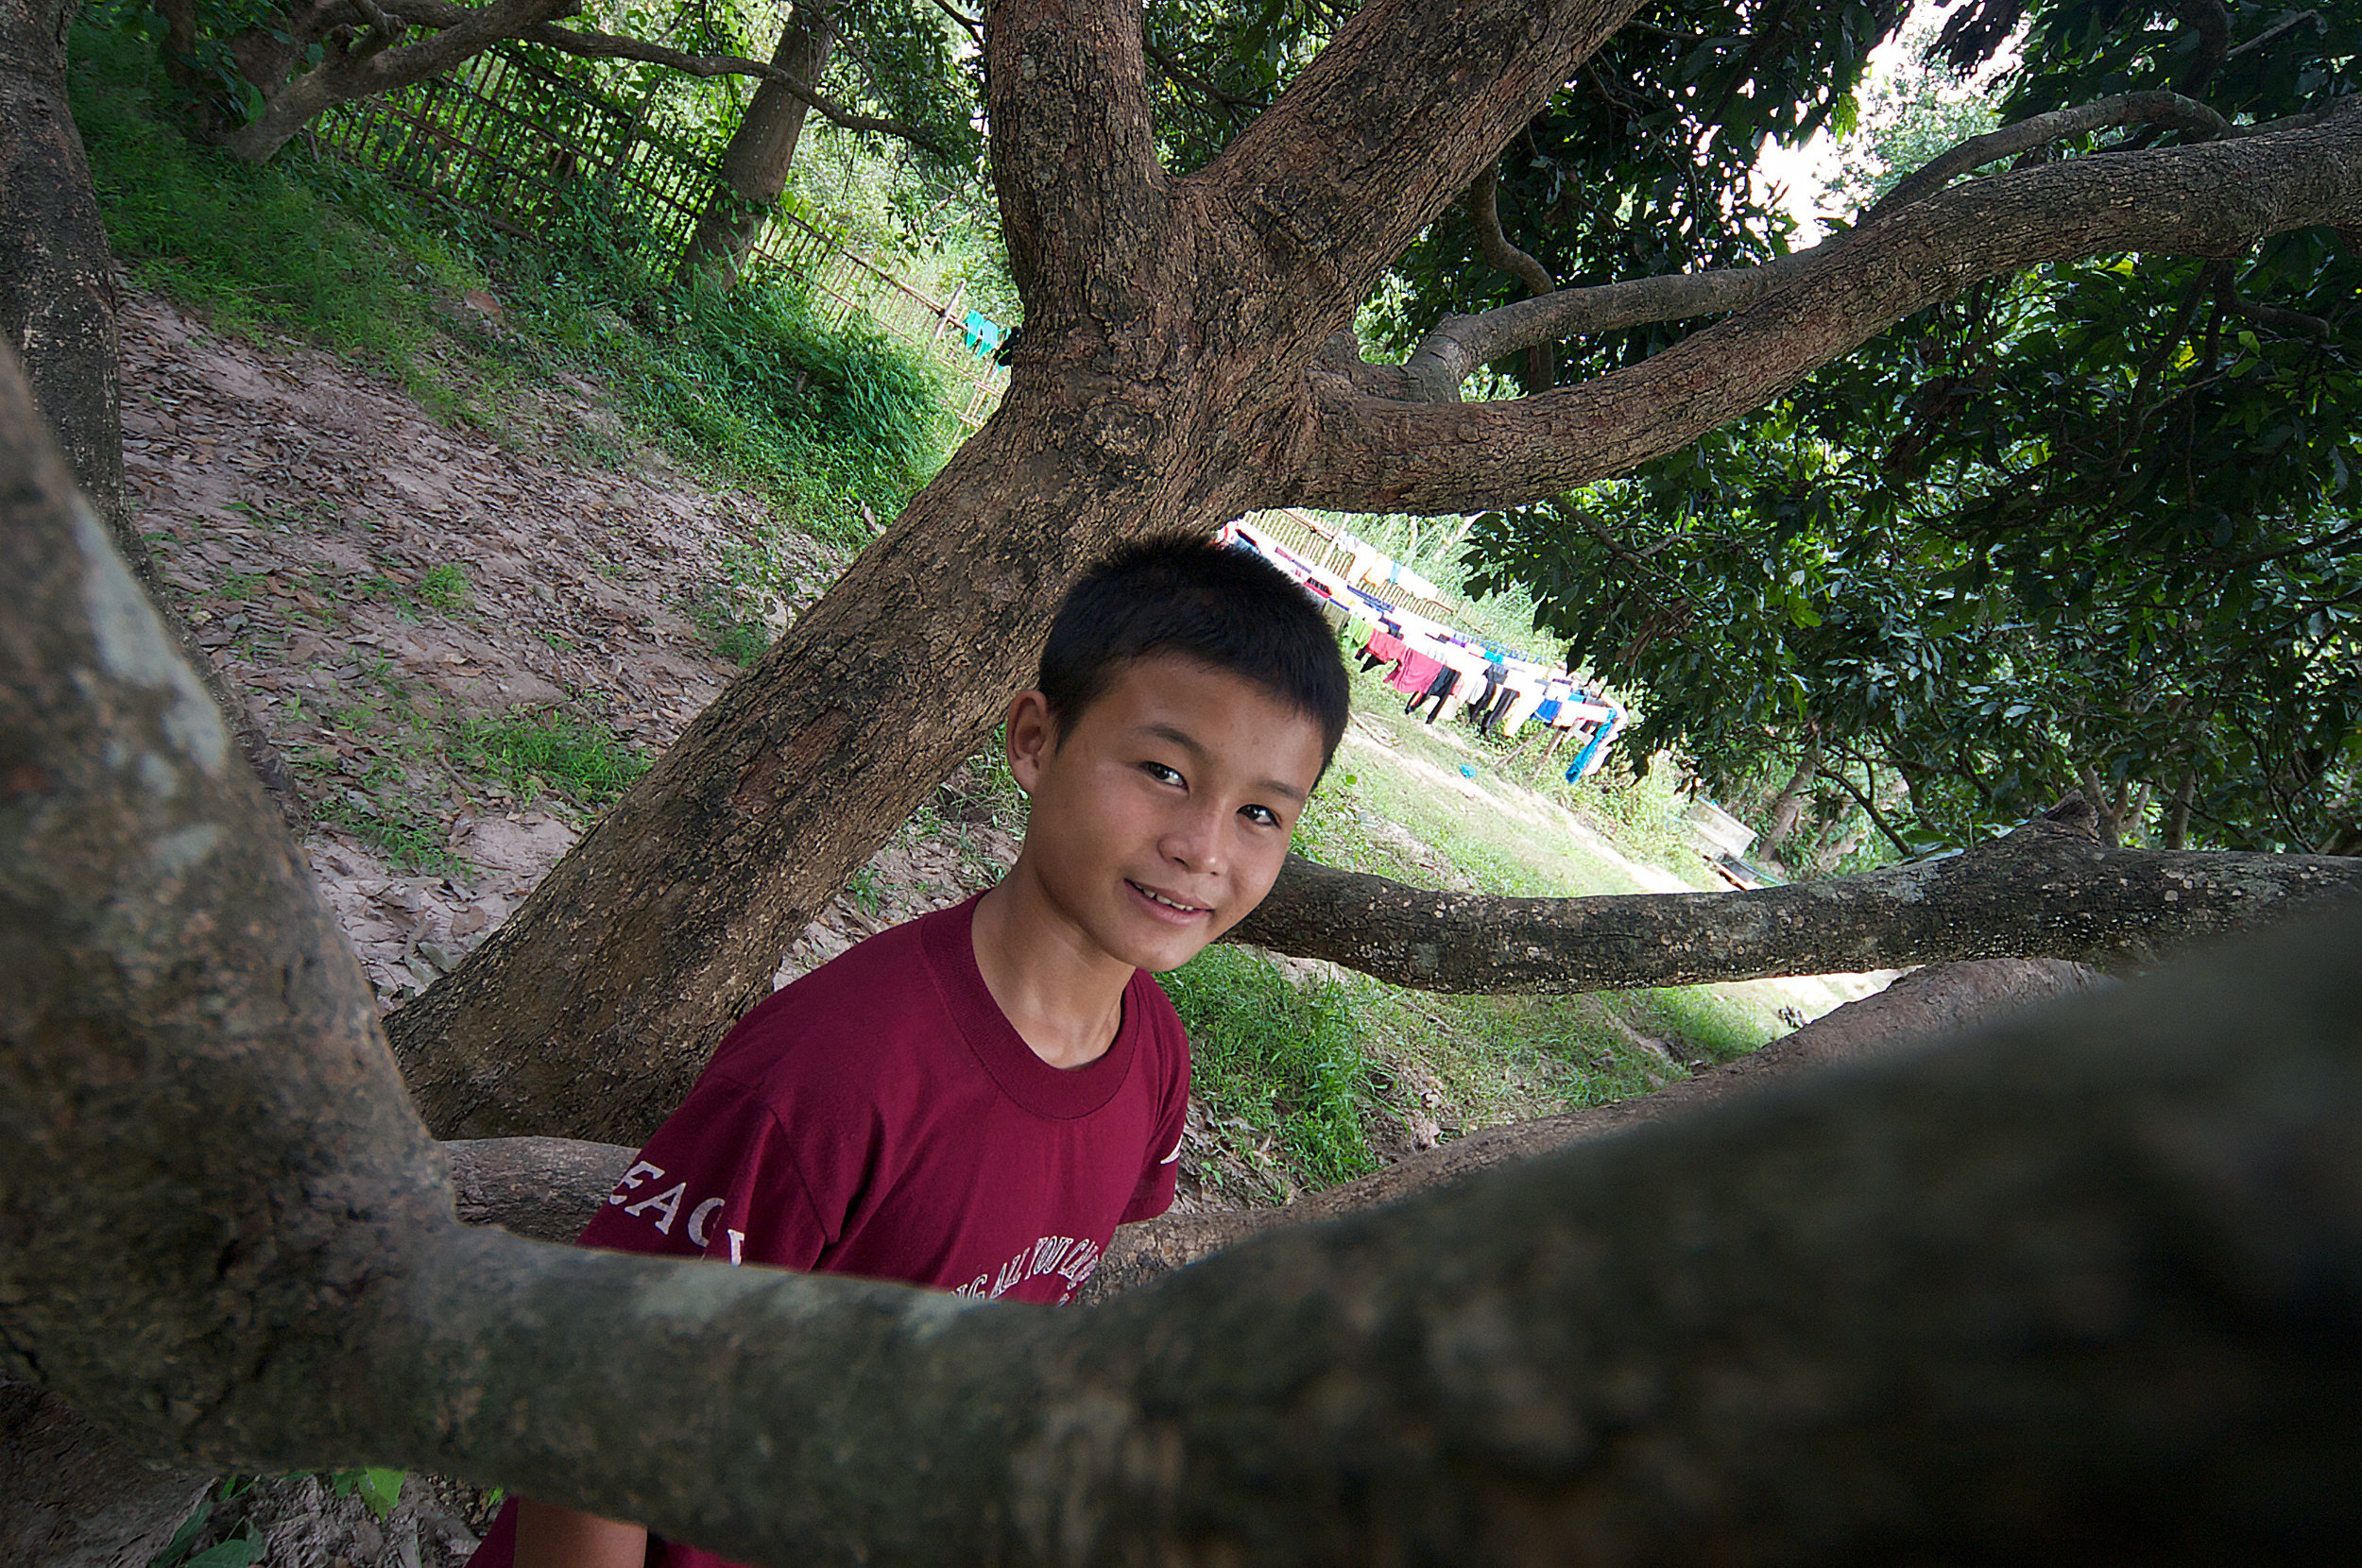  Janpon, age 13, growing up at Asia's Hope in Doi Saket, Thailand. 